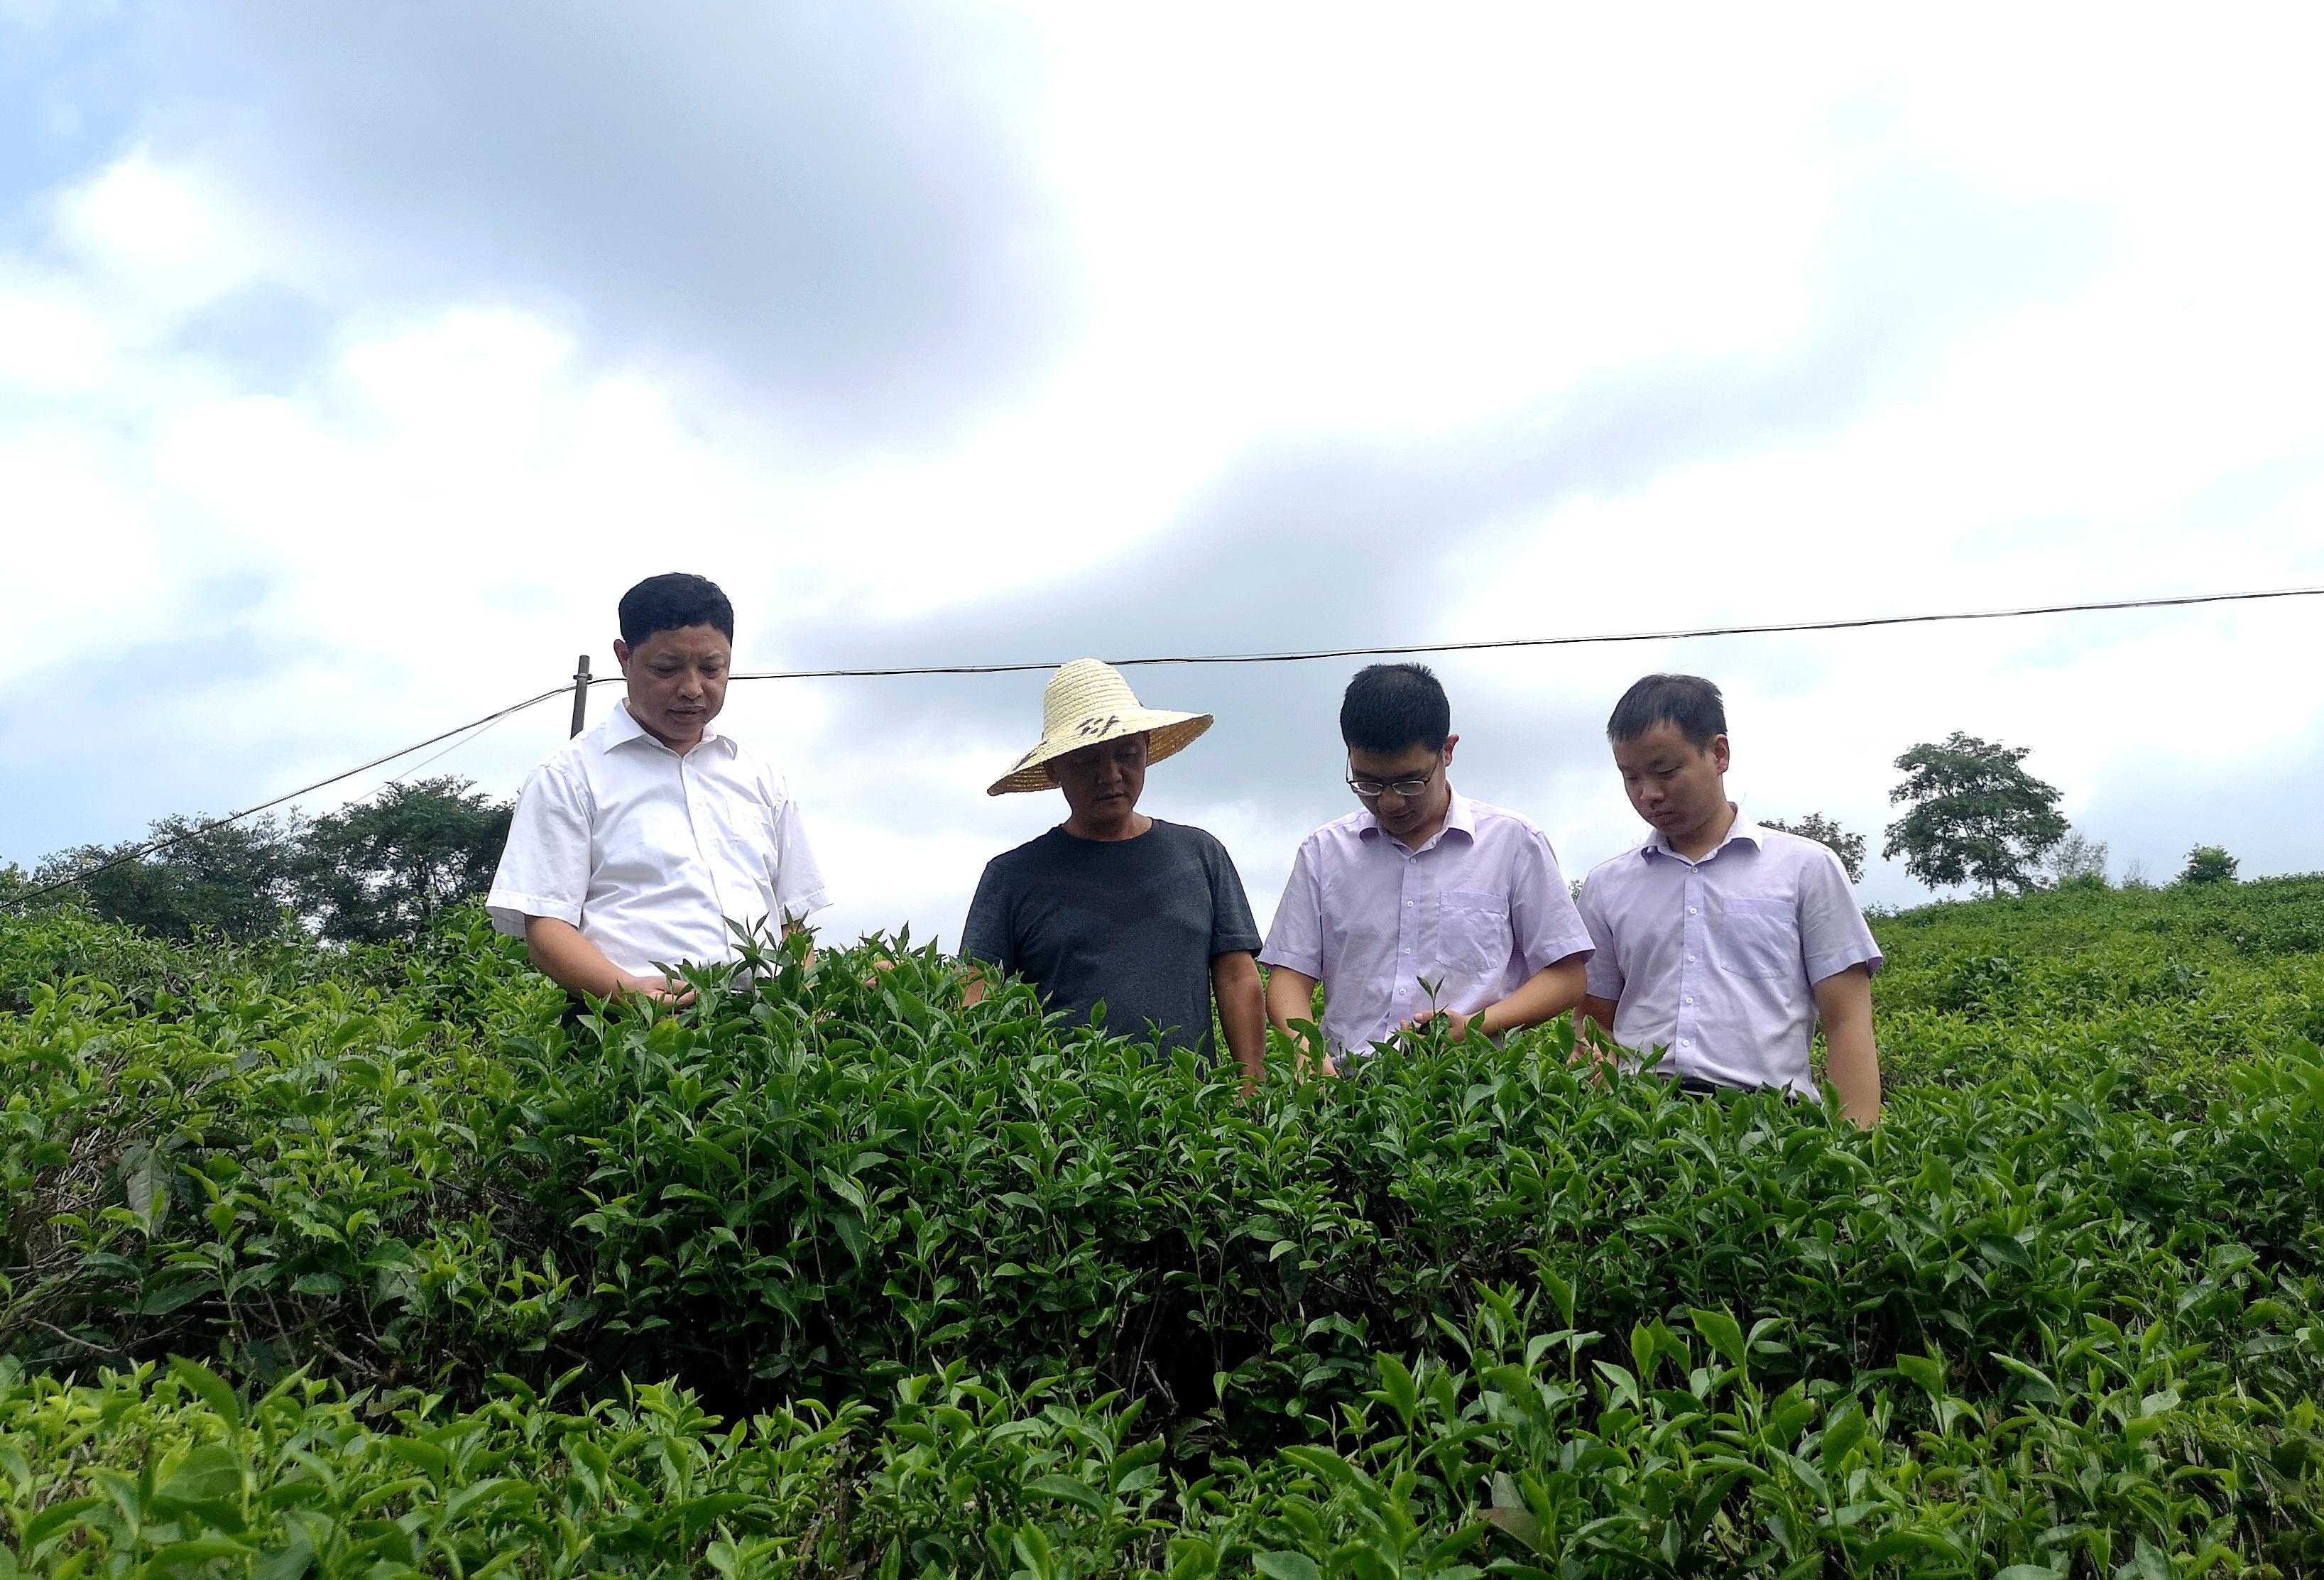 绿意满山茶飘香 活水灌溉致富花——农行南平分行支持政和白茶产业发展小记